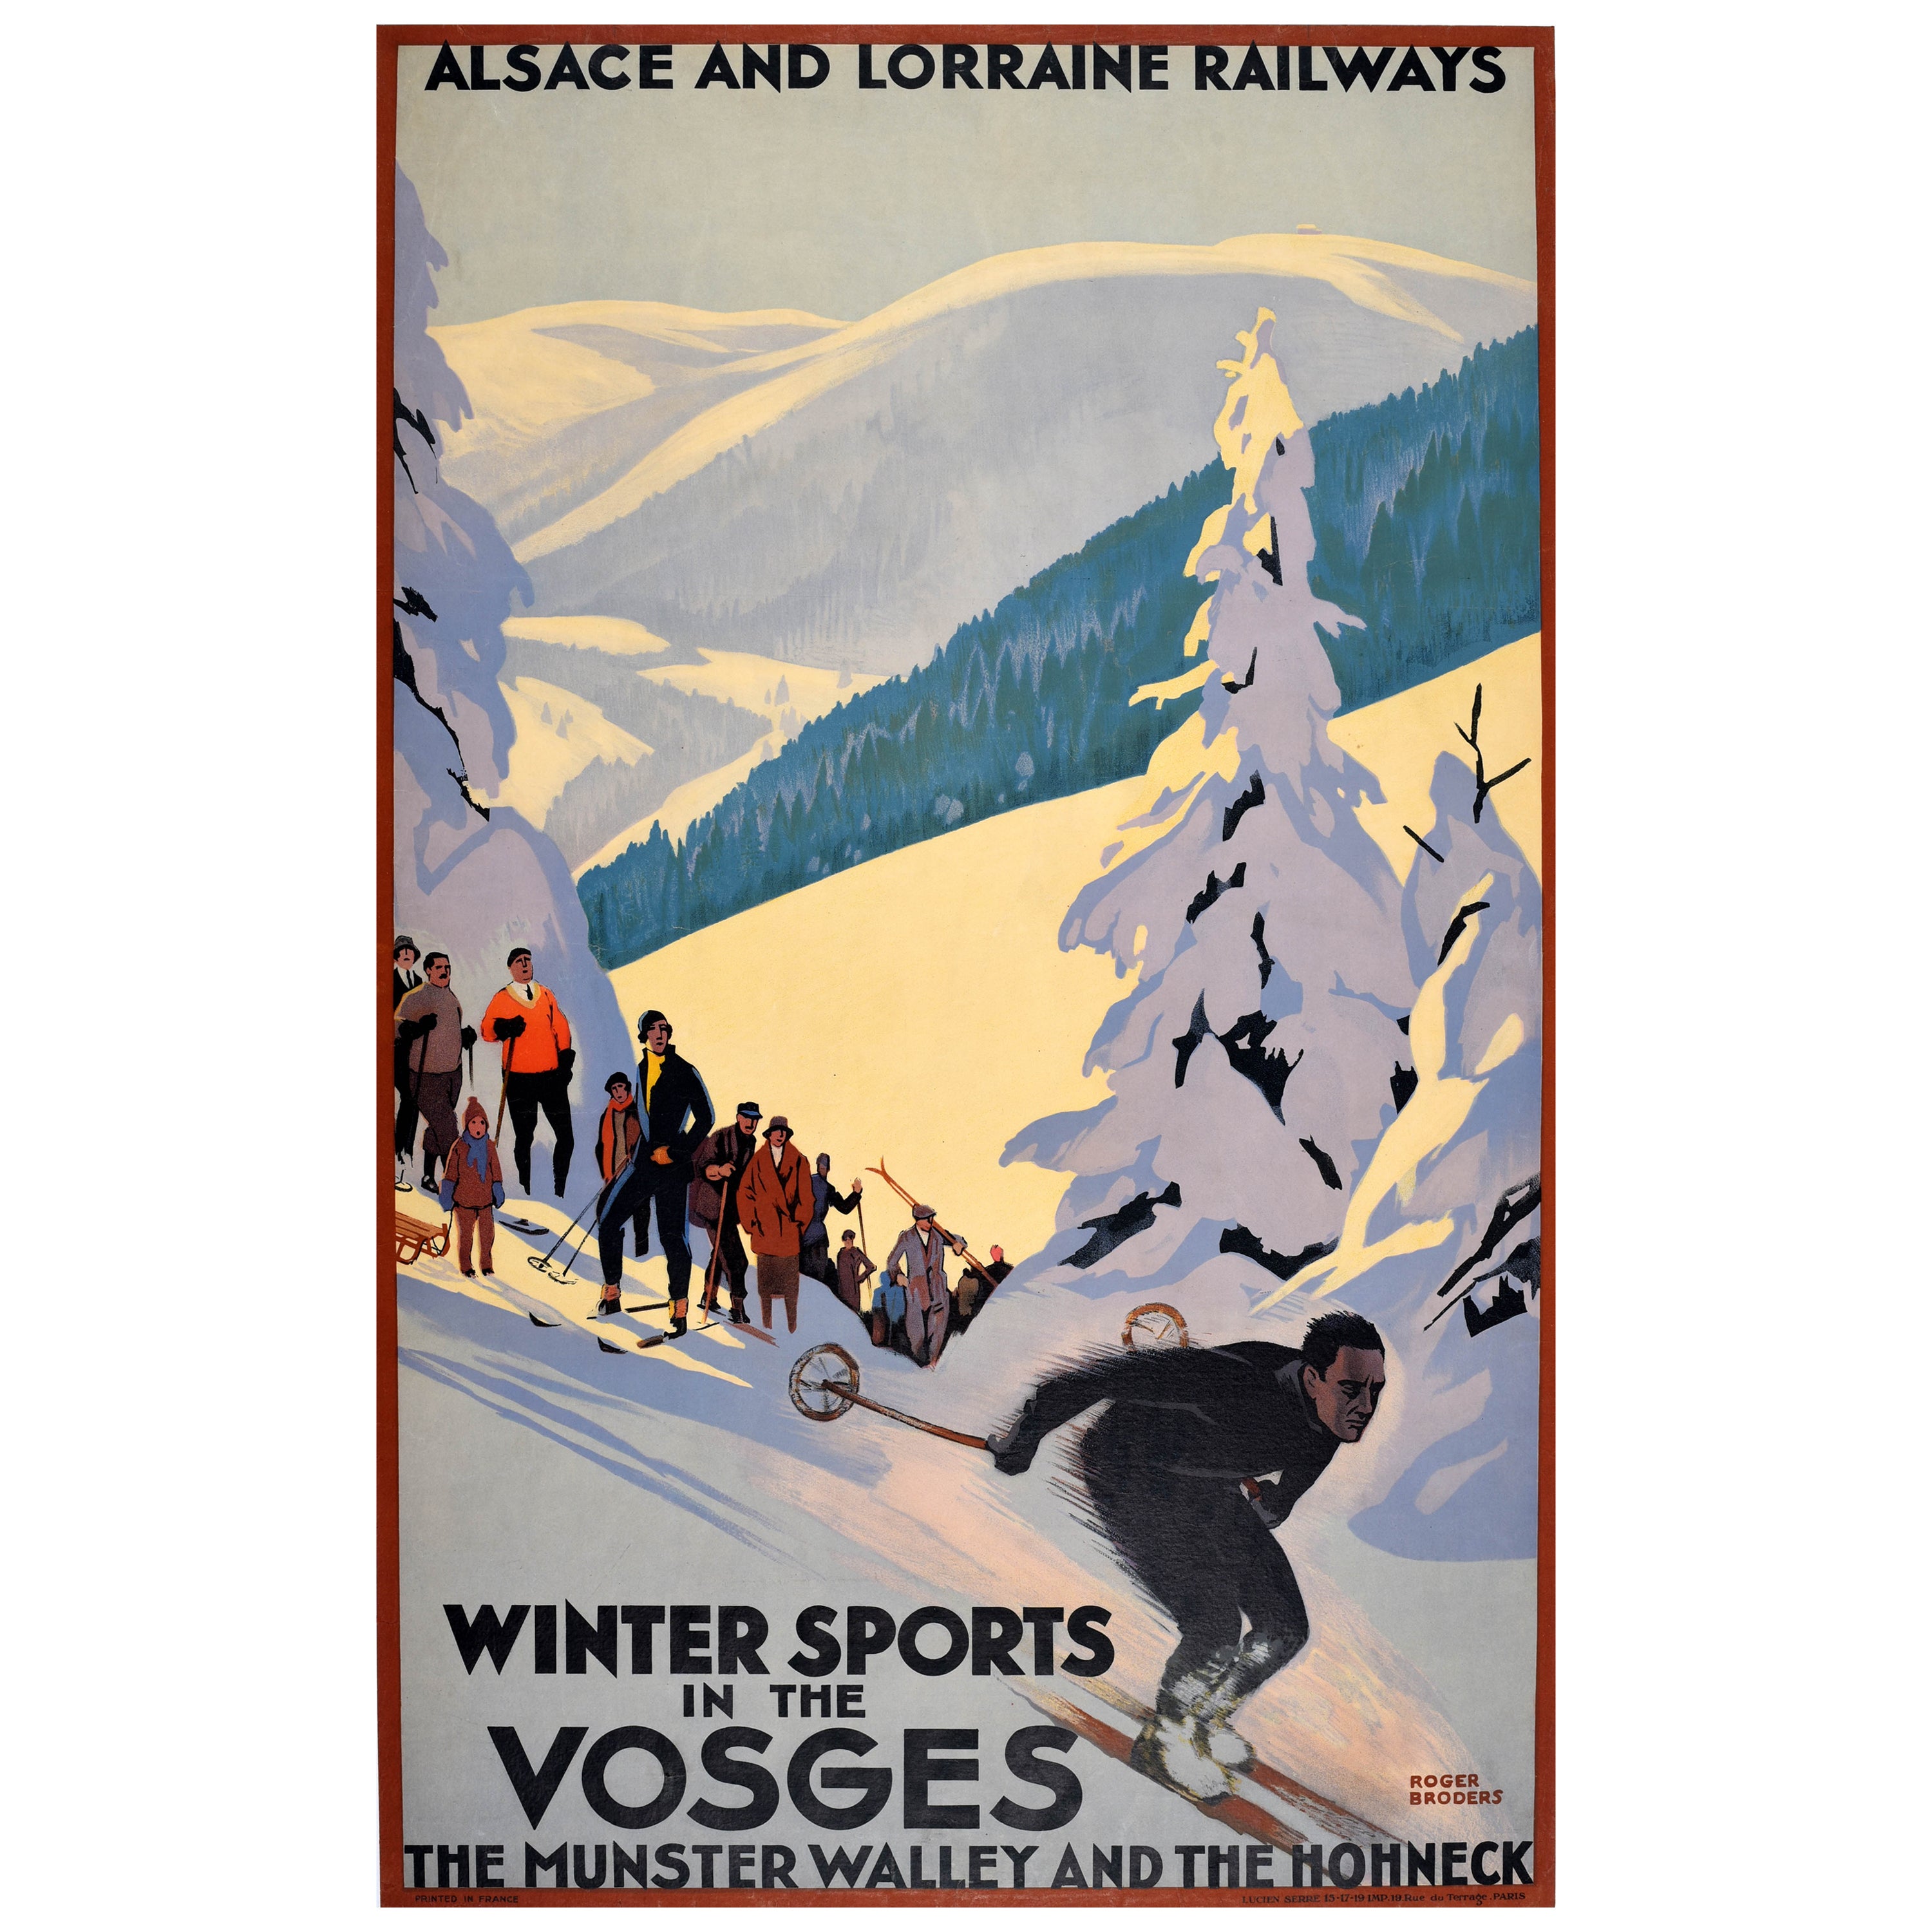 Original Vintage Ski Travel Poster Winter Sports Vosges France Roger Broders